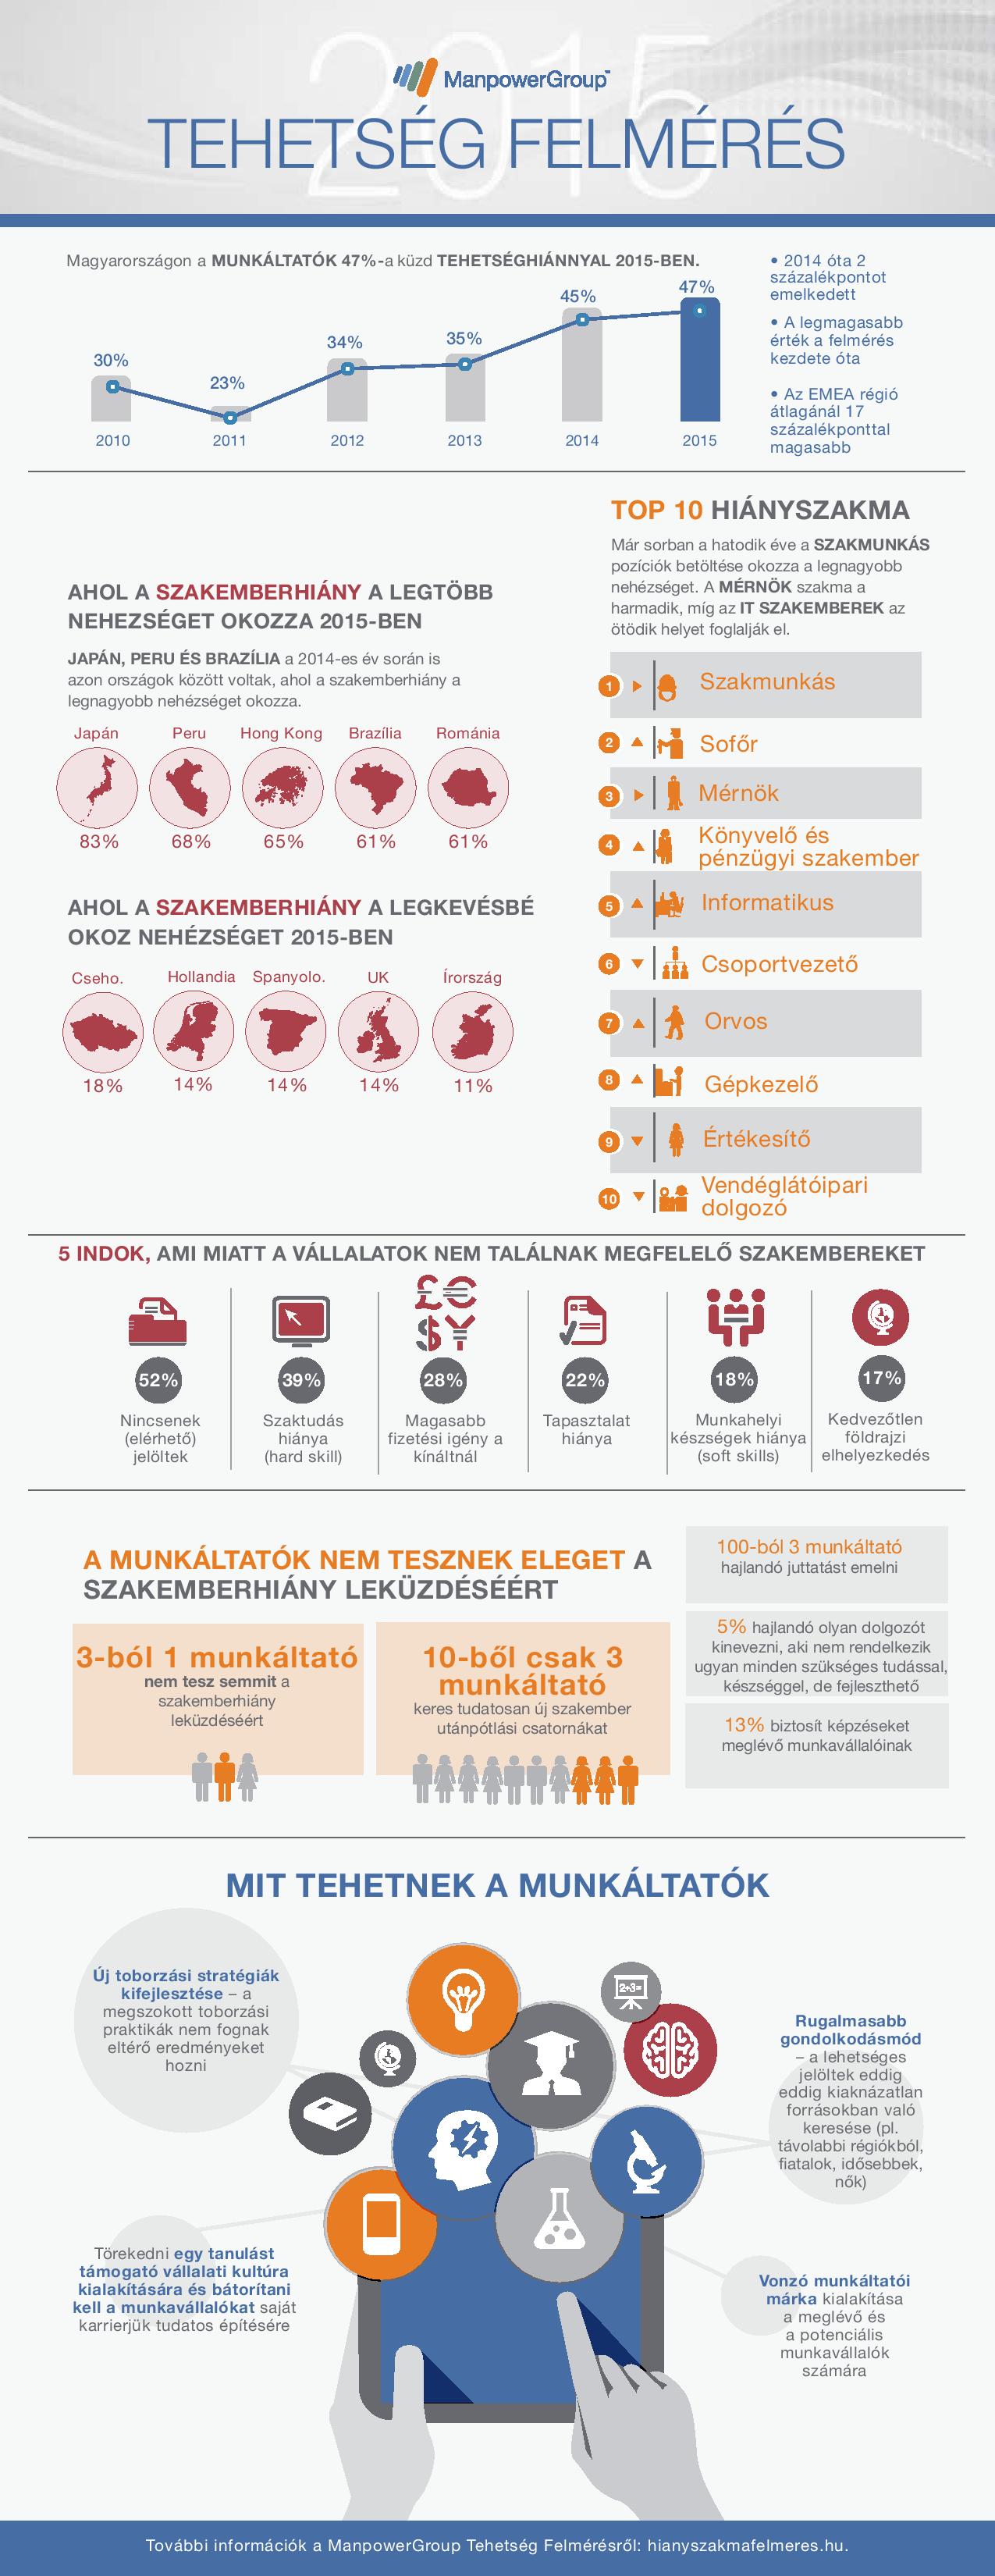 hianyszakma-felmeres-infografika-page-001.jpg